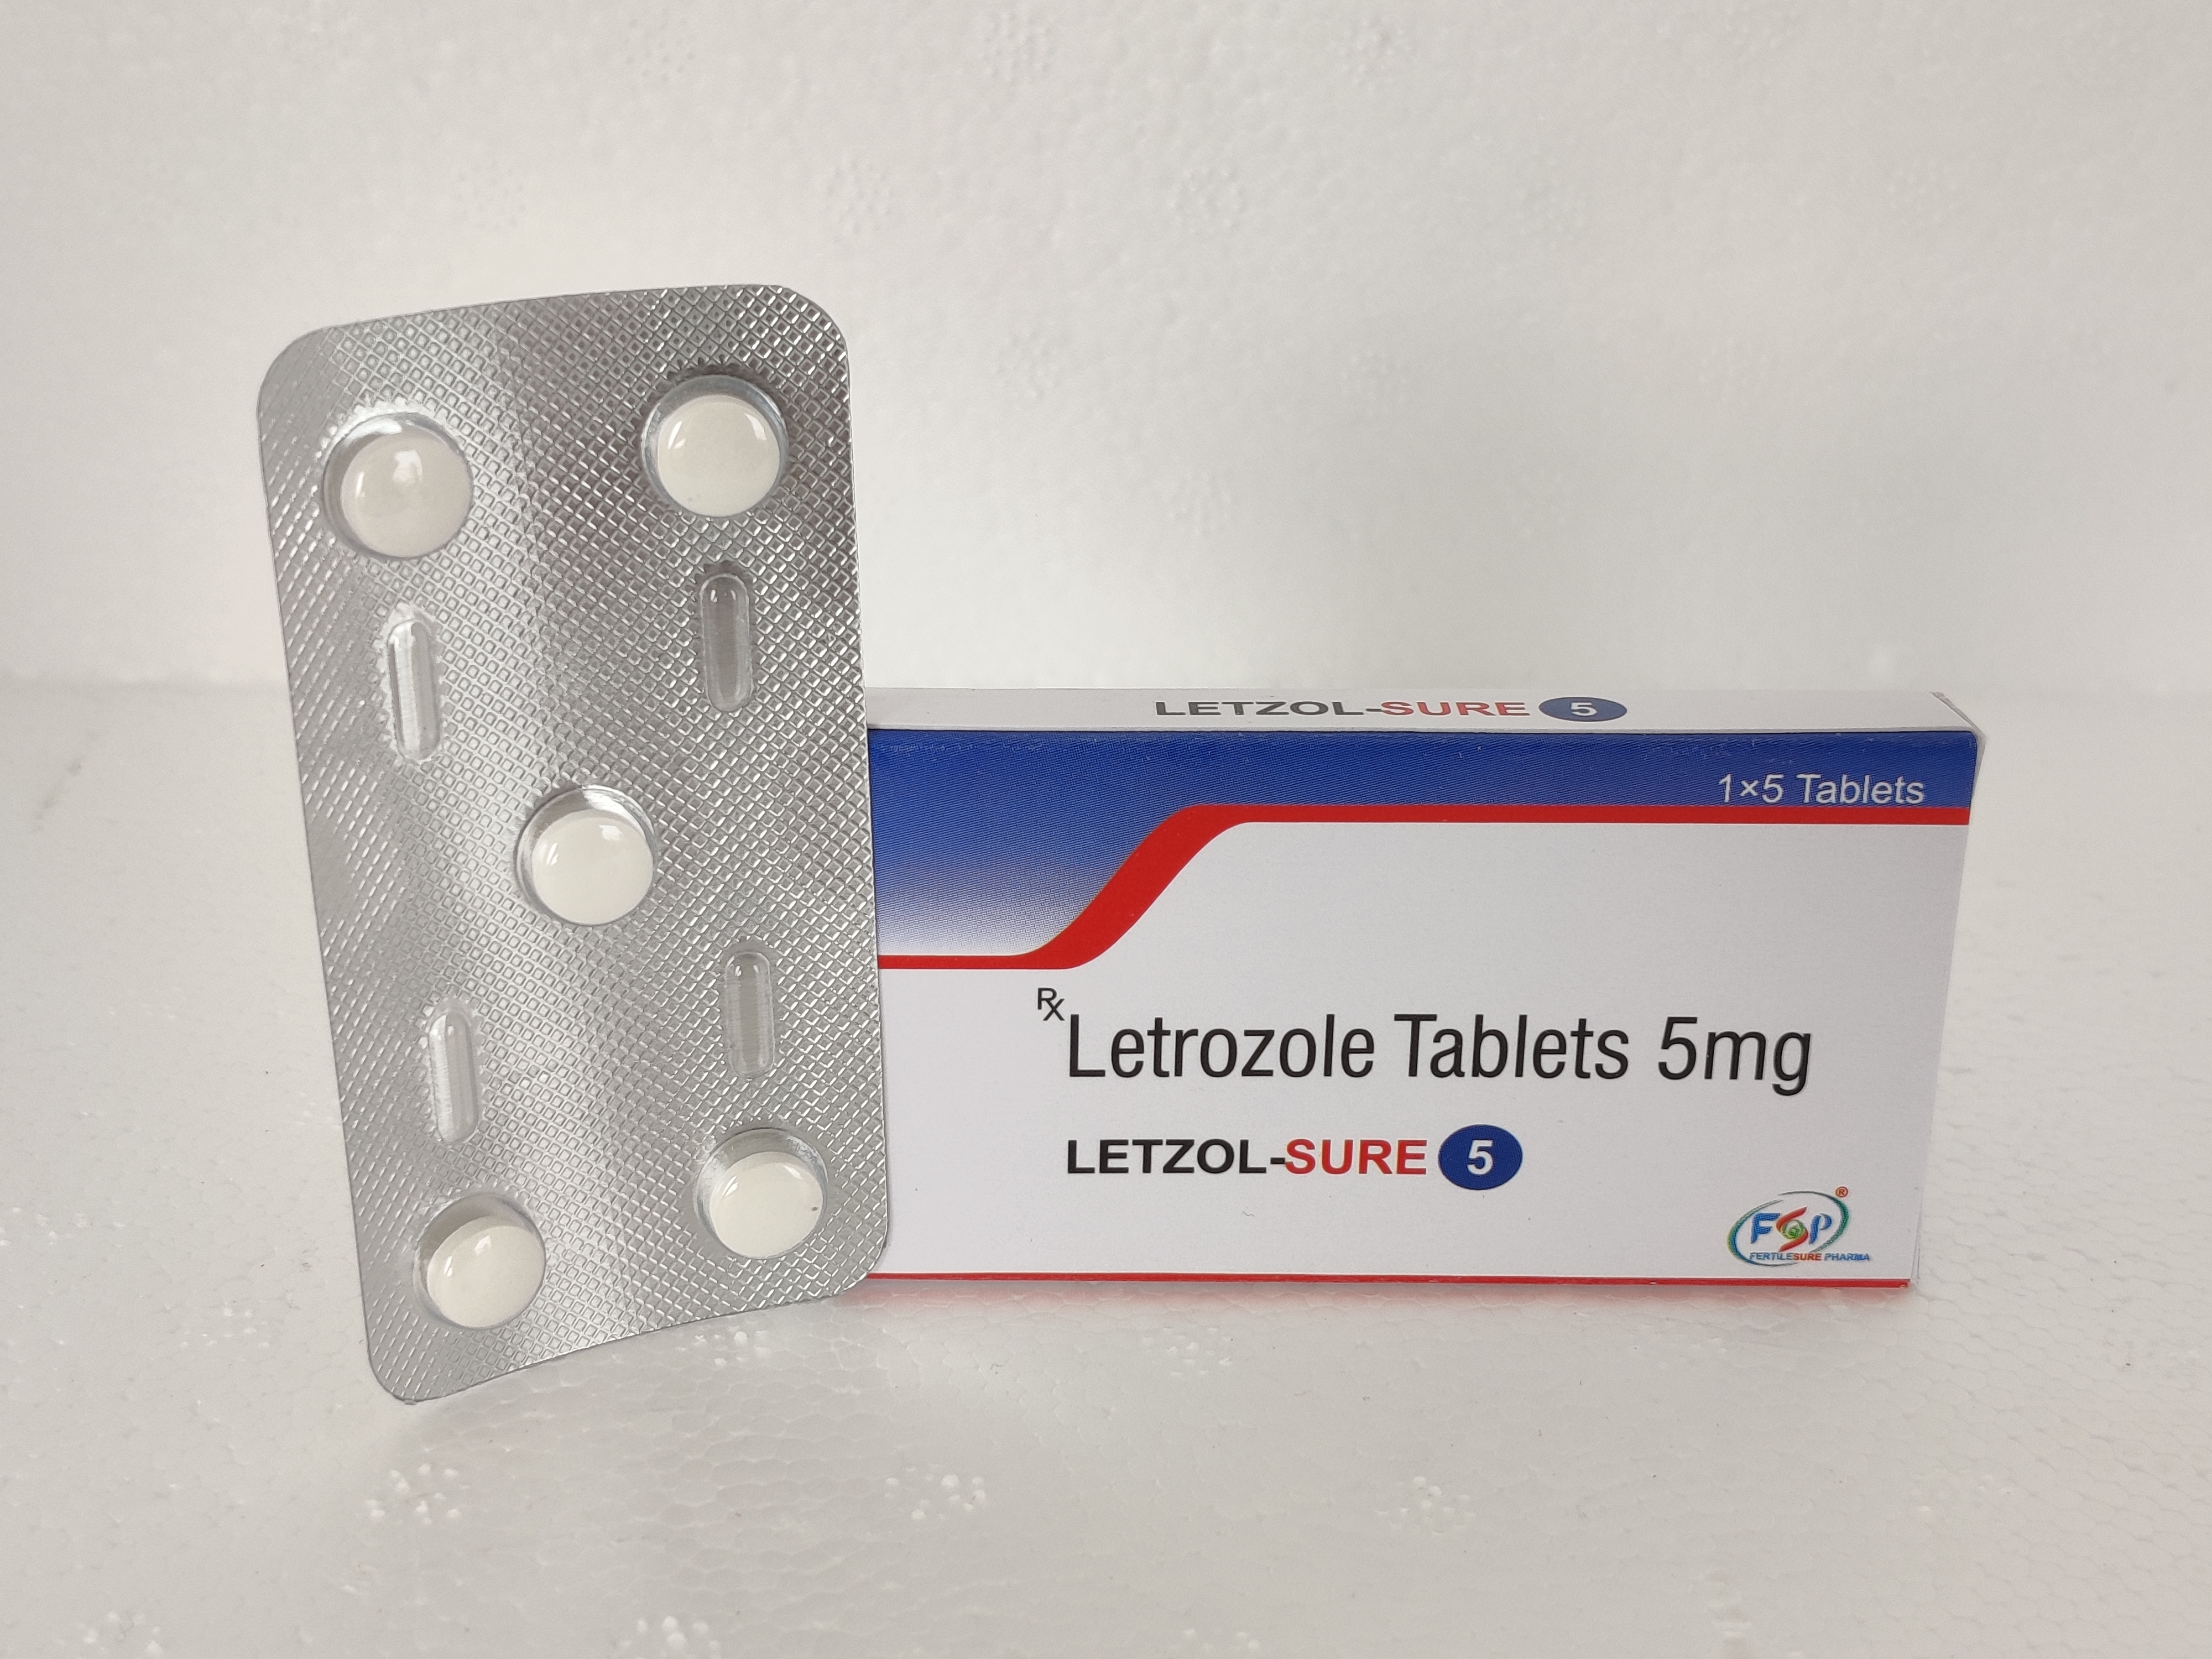 LETZOL-SURE SR 5 (Letrozole tablet 5mg)